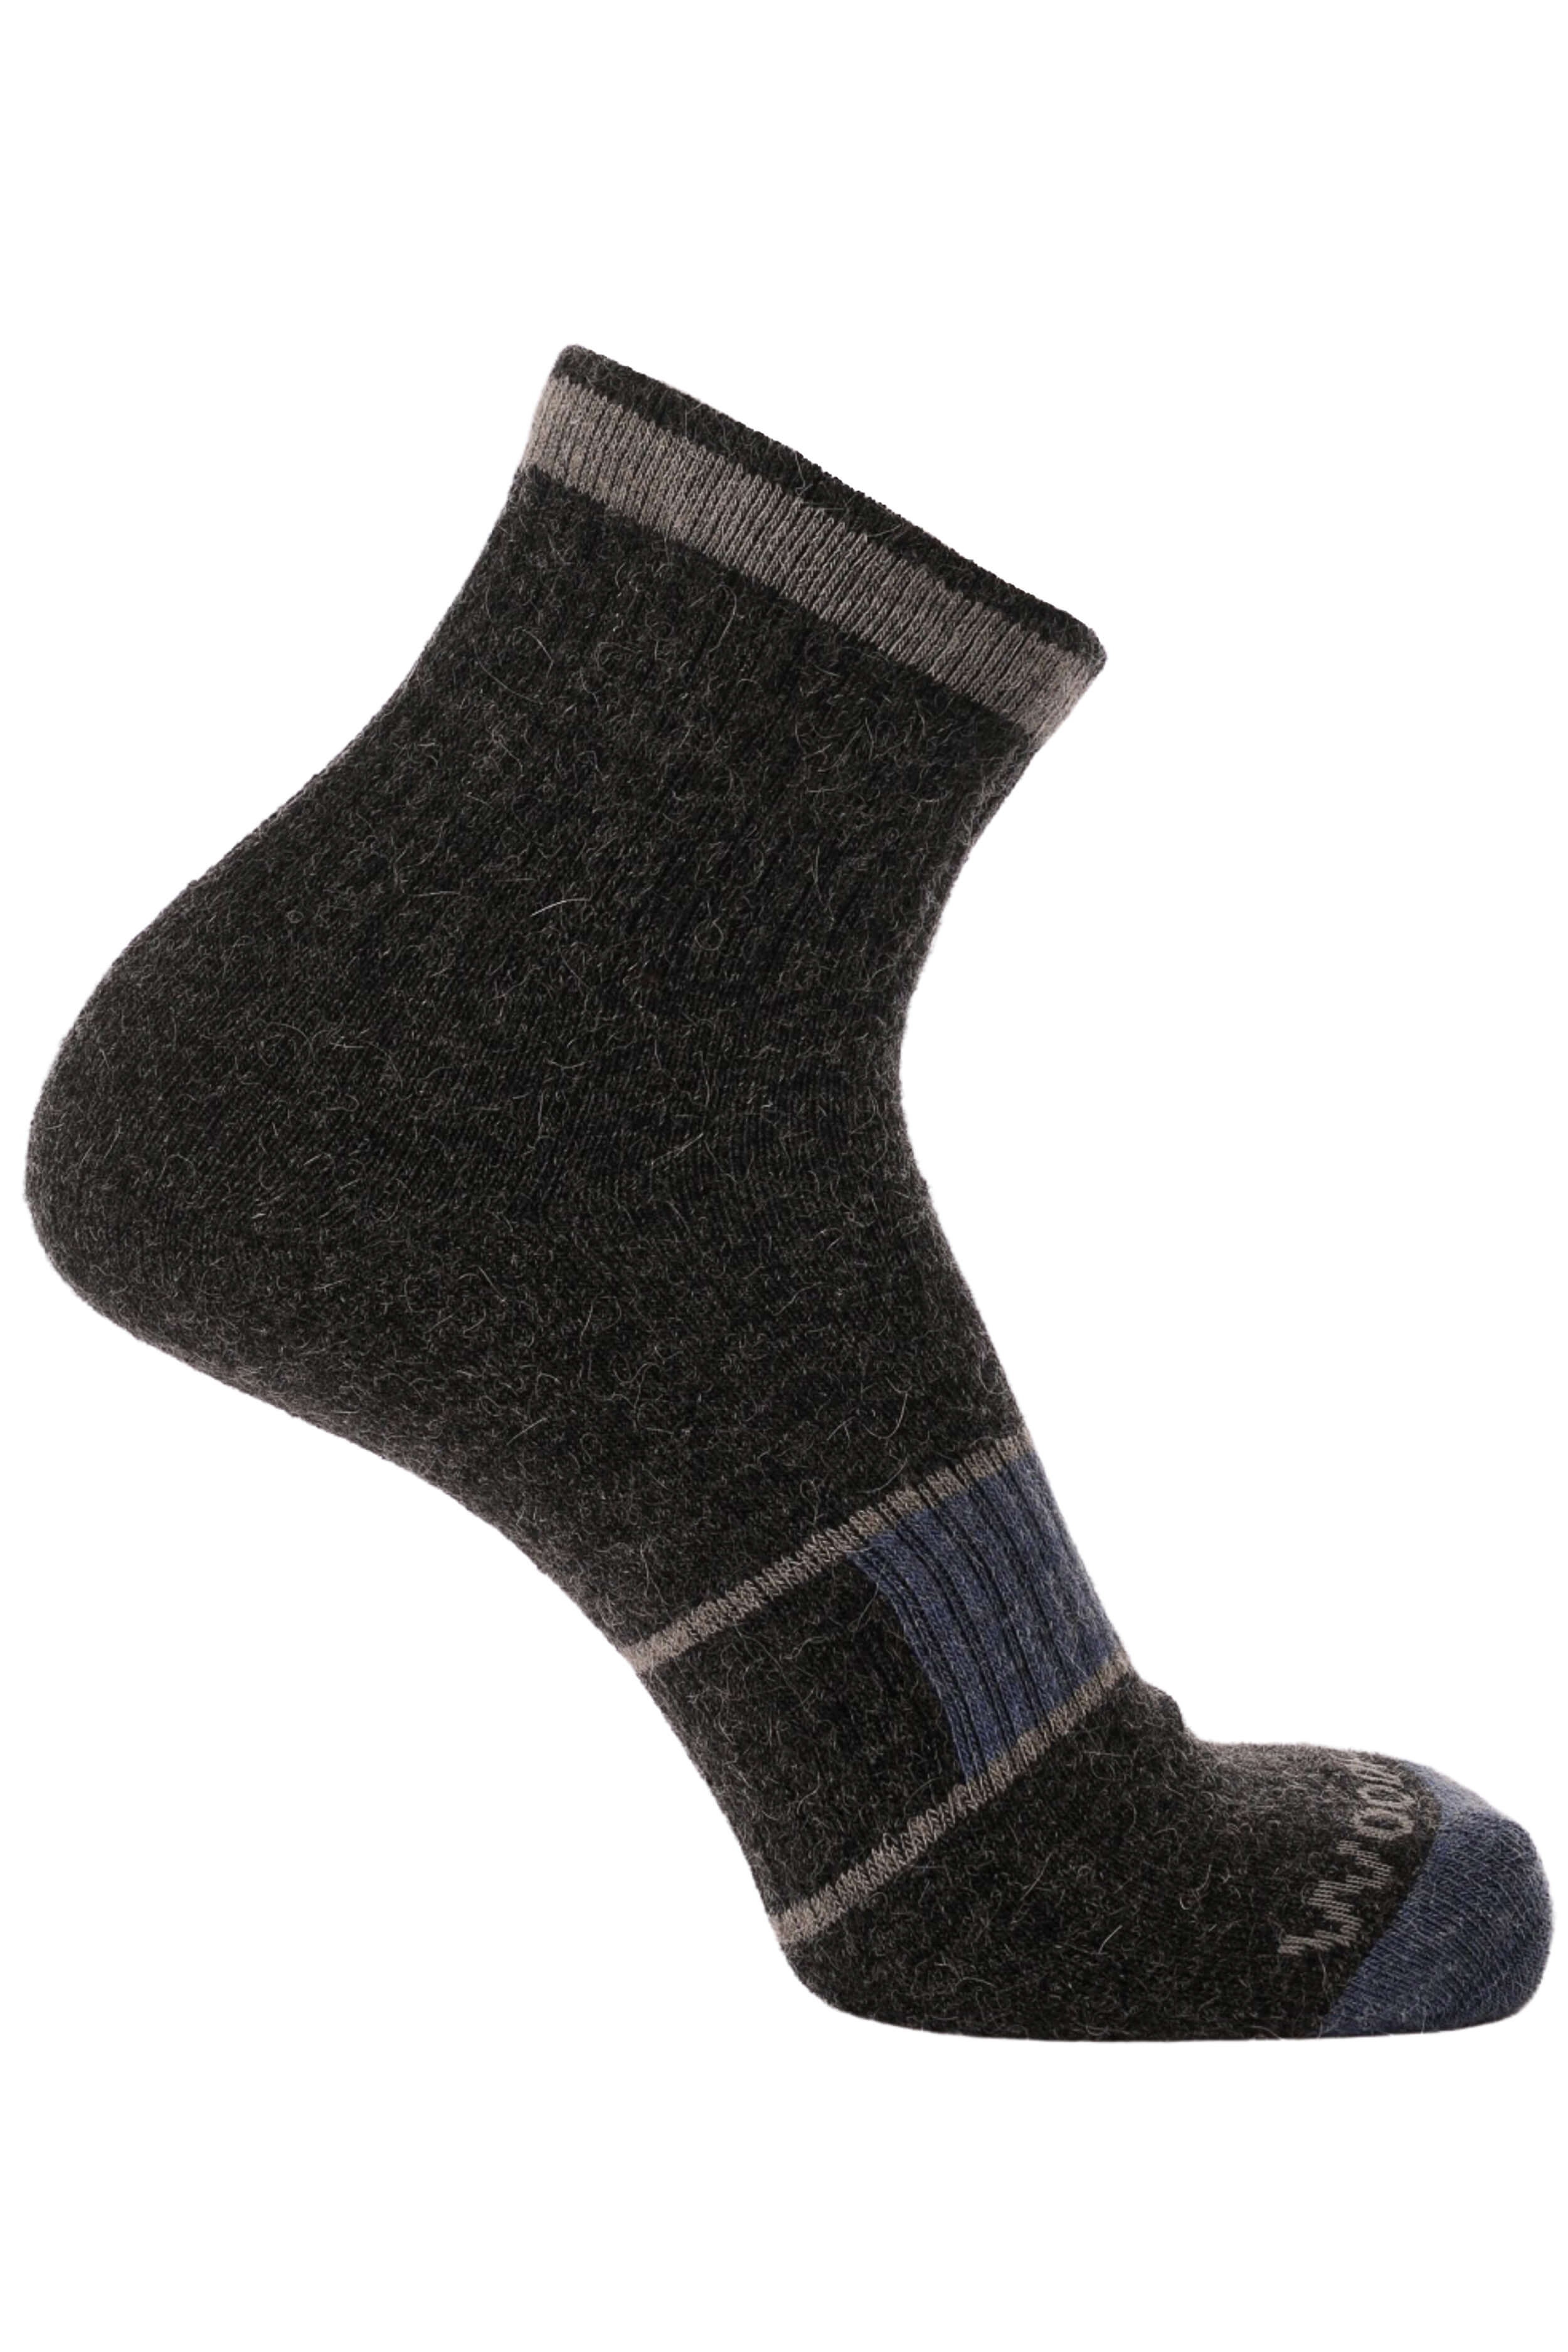 Nada Llama Quarter Socks - Alpaca Socks - Woodroad Gear Co.